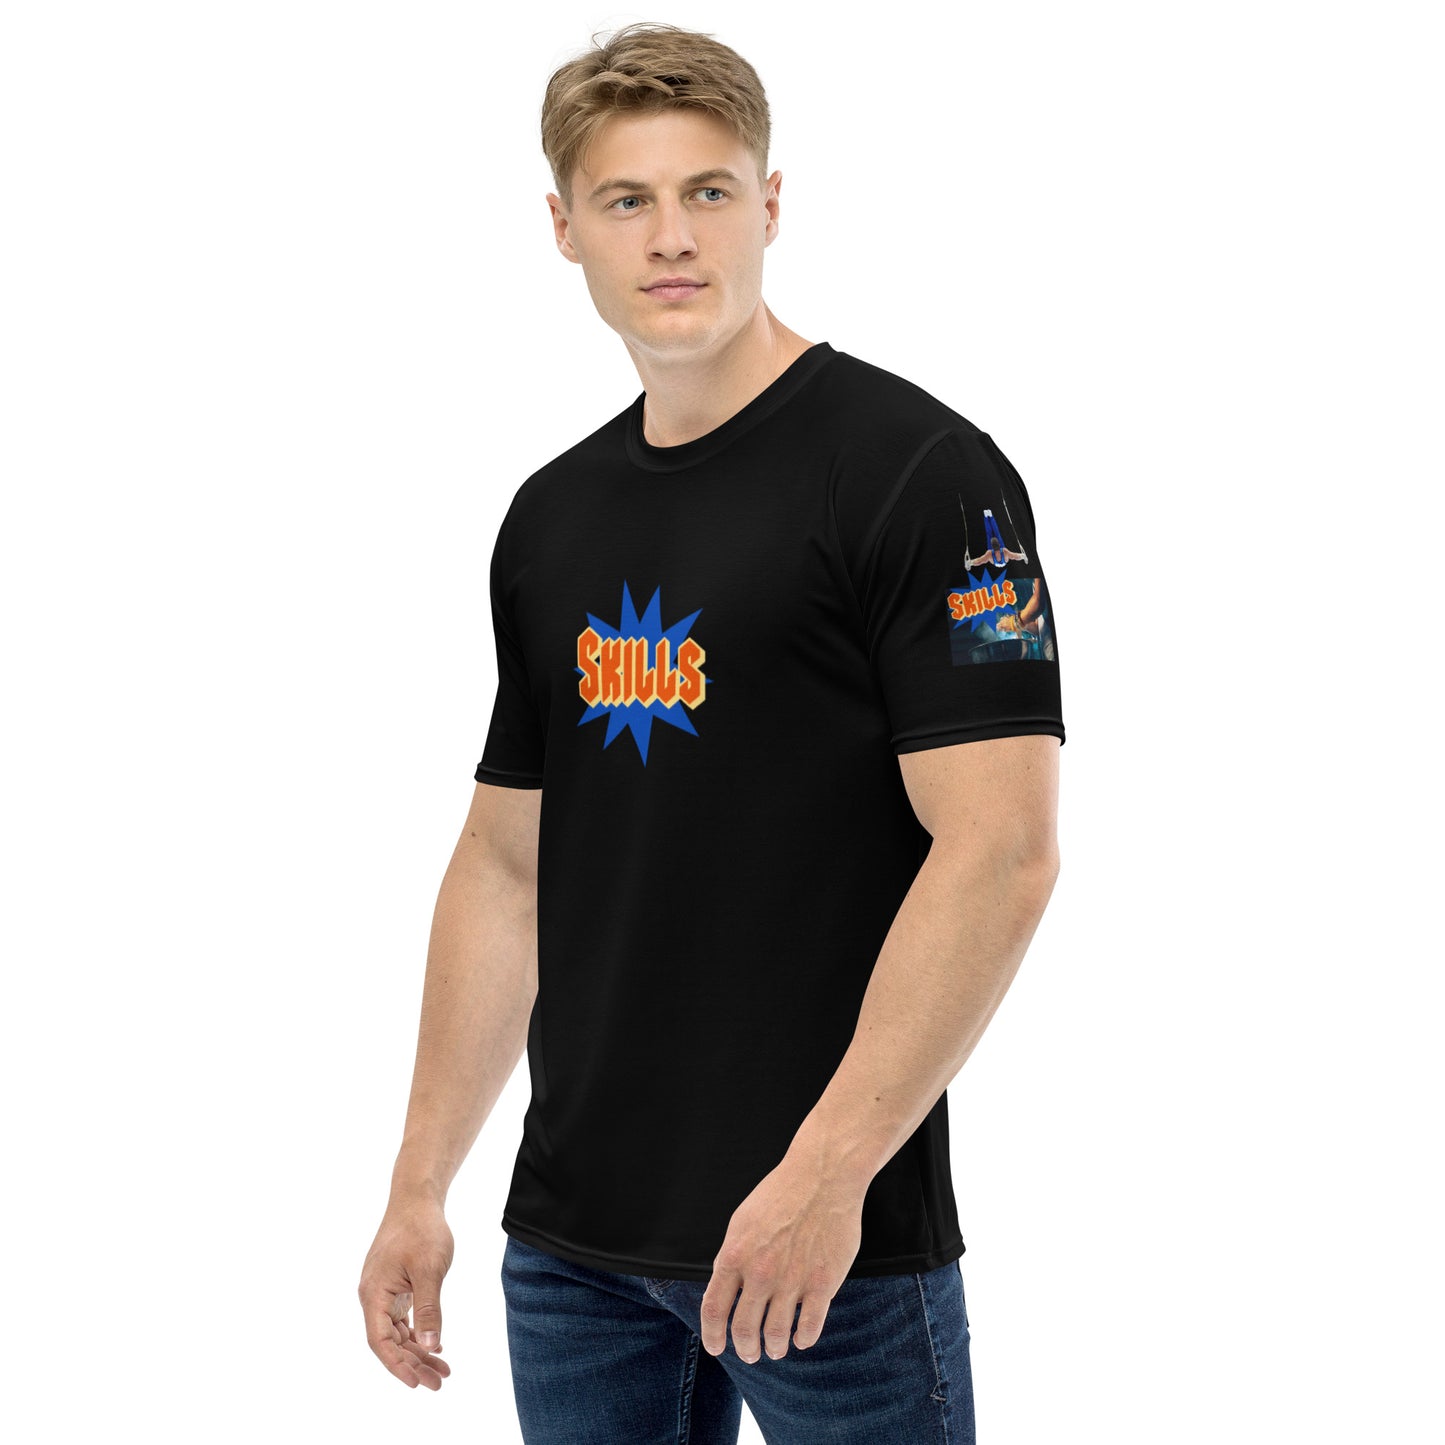 SKILLS Gymnastics 954 Signature Men's t-shirt